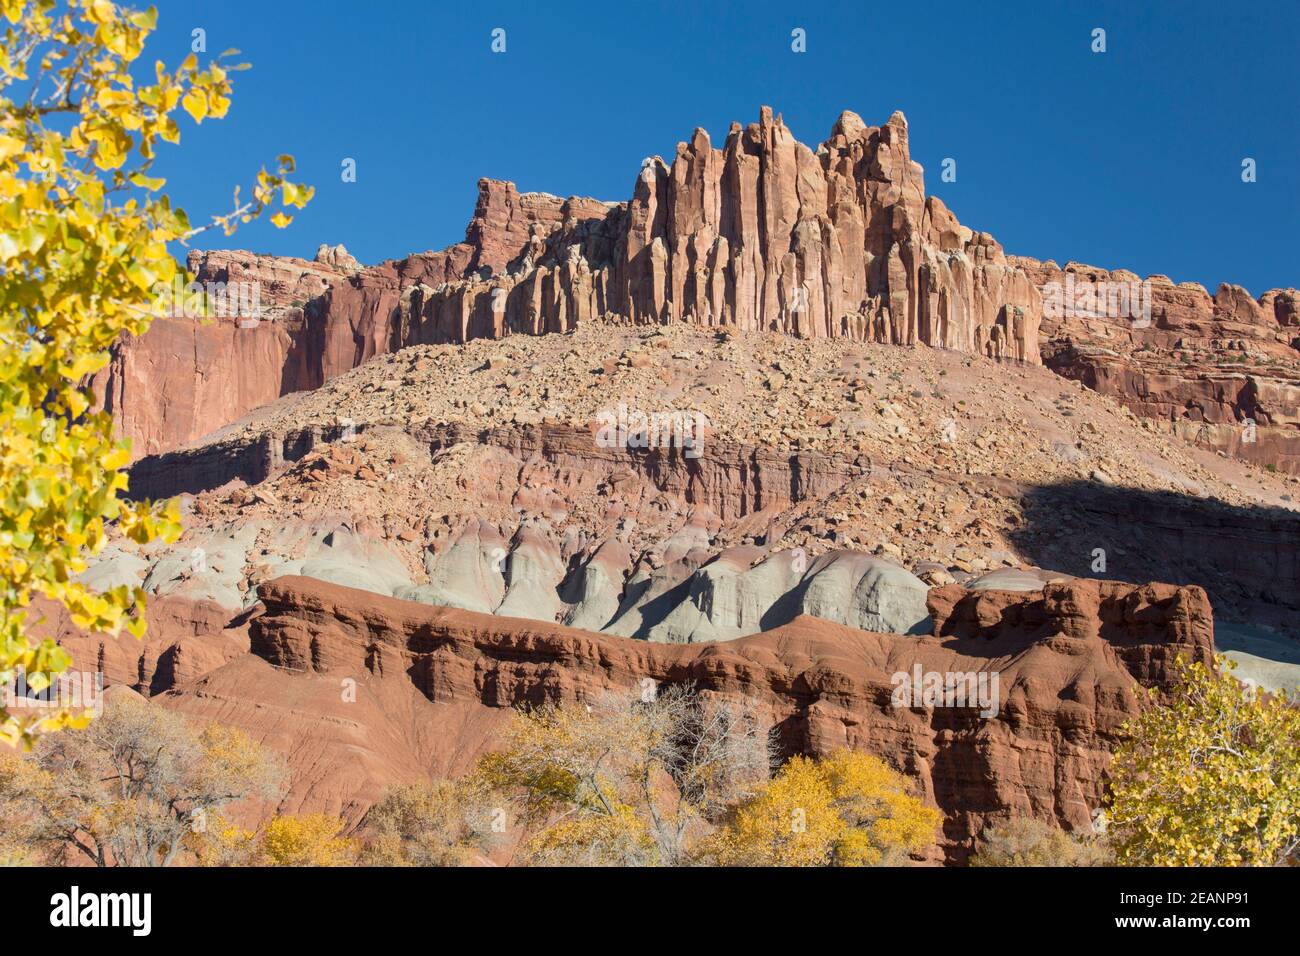 The Castle, un pic de grès emblématique faisant partie de Waterpocket Fold, automne, Fruita, parc national de Capitol Reef, Utah, États-Unis d'Amérique Banque D'Images